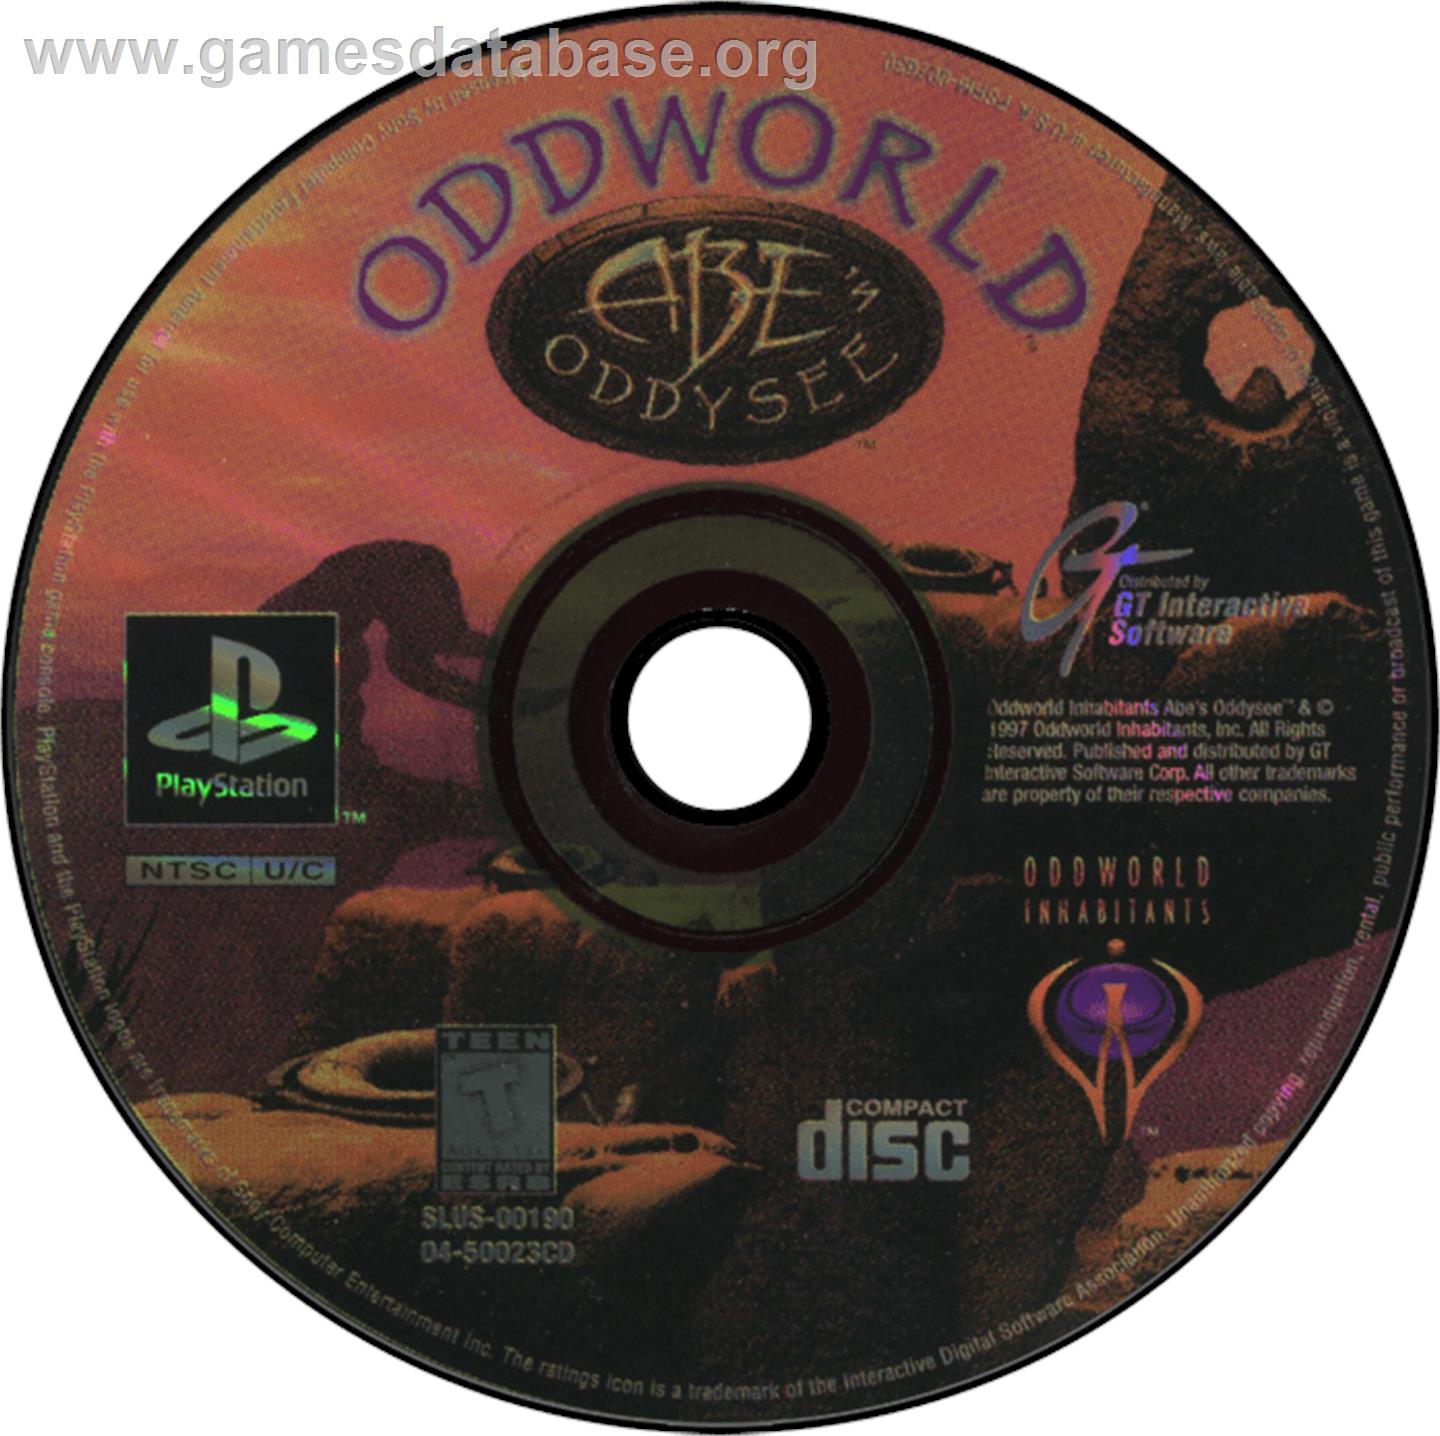 Oddworld: Abe's Oddysee - Sony Playstation - Artwork - Disc